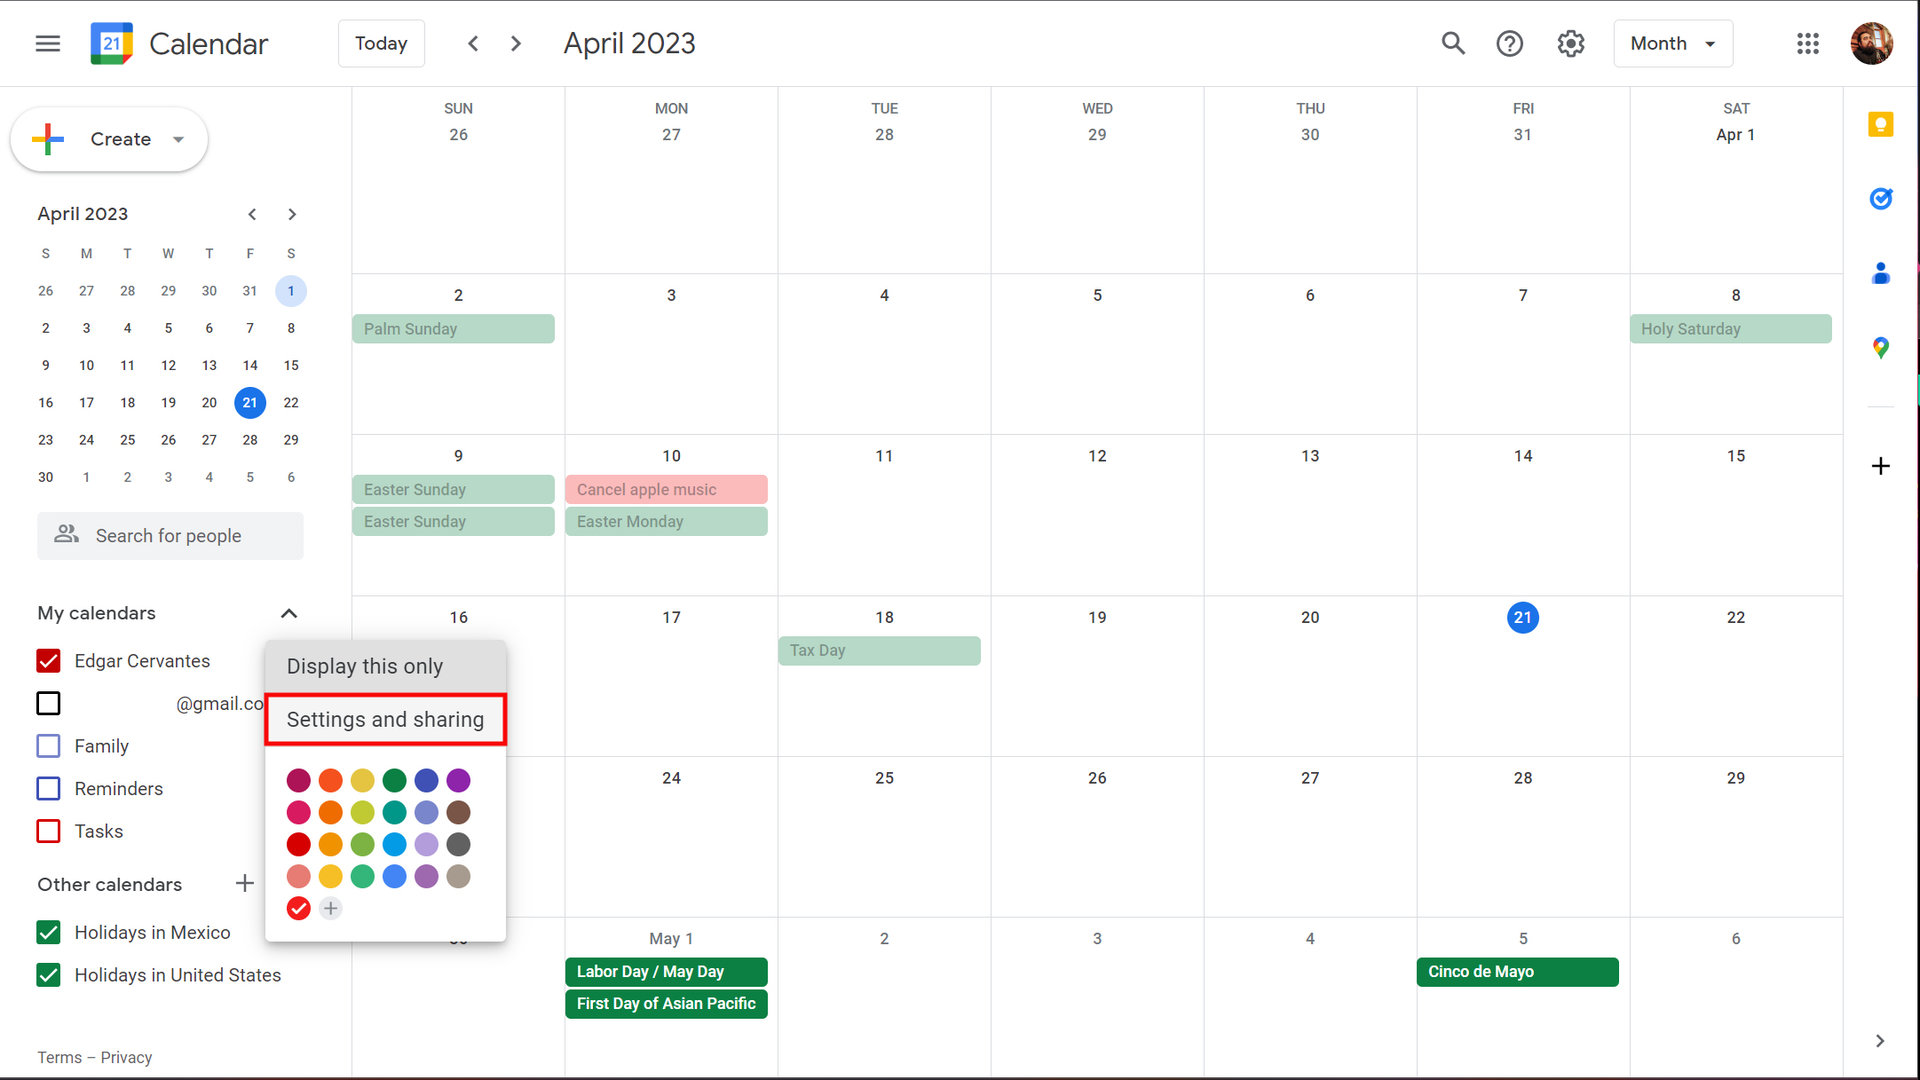 How to share a Google calendar using a link 2